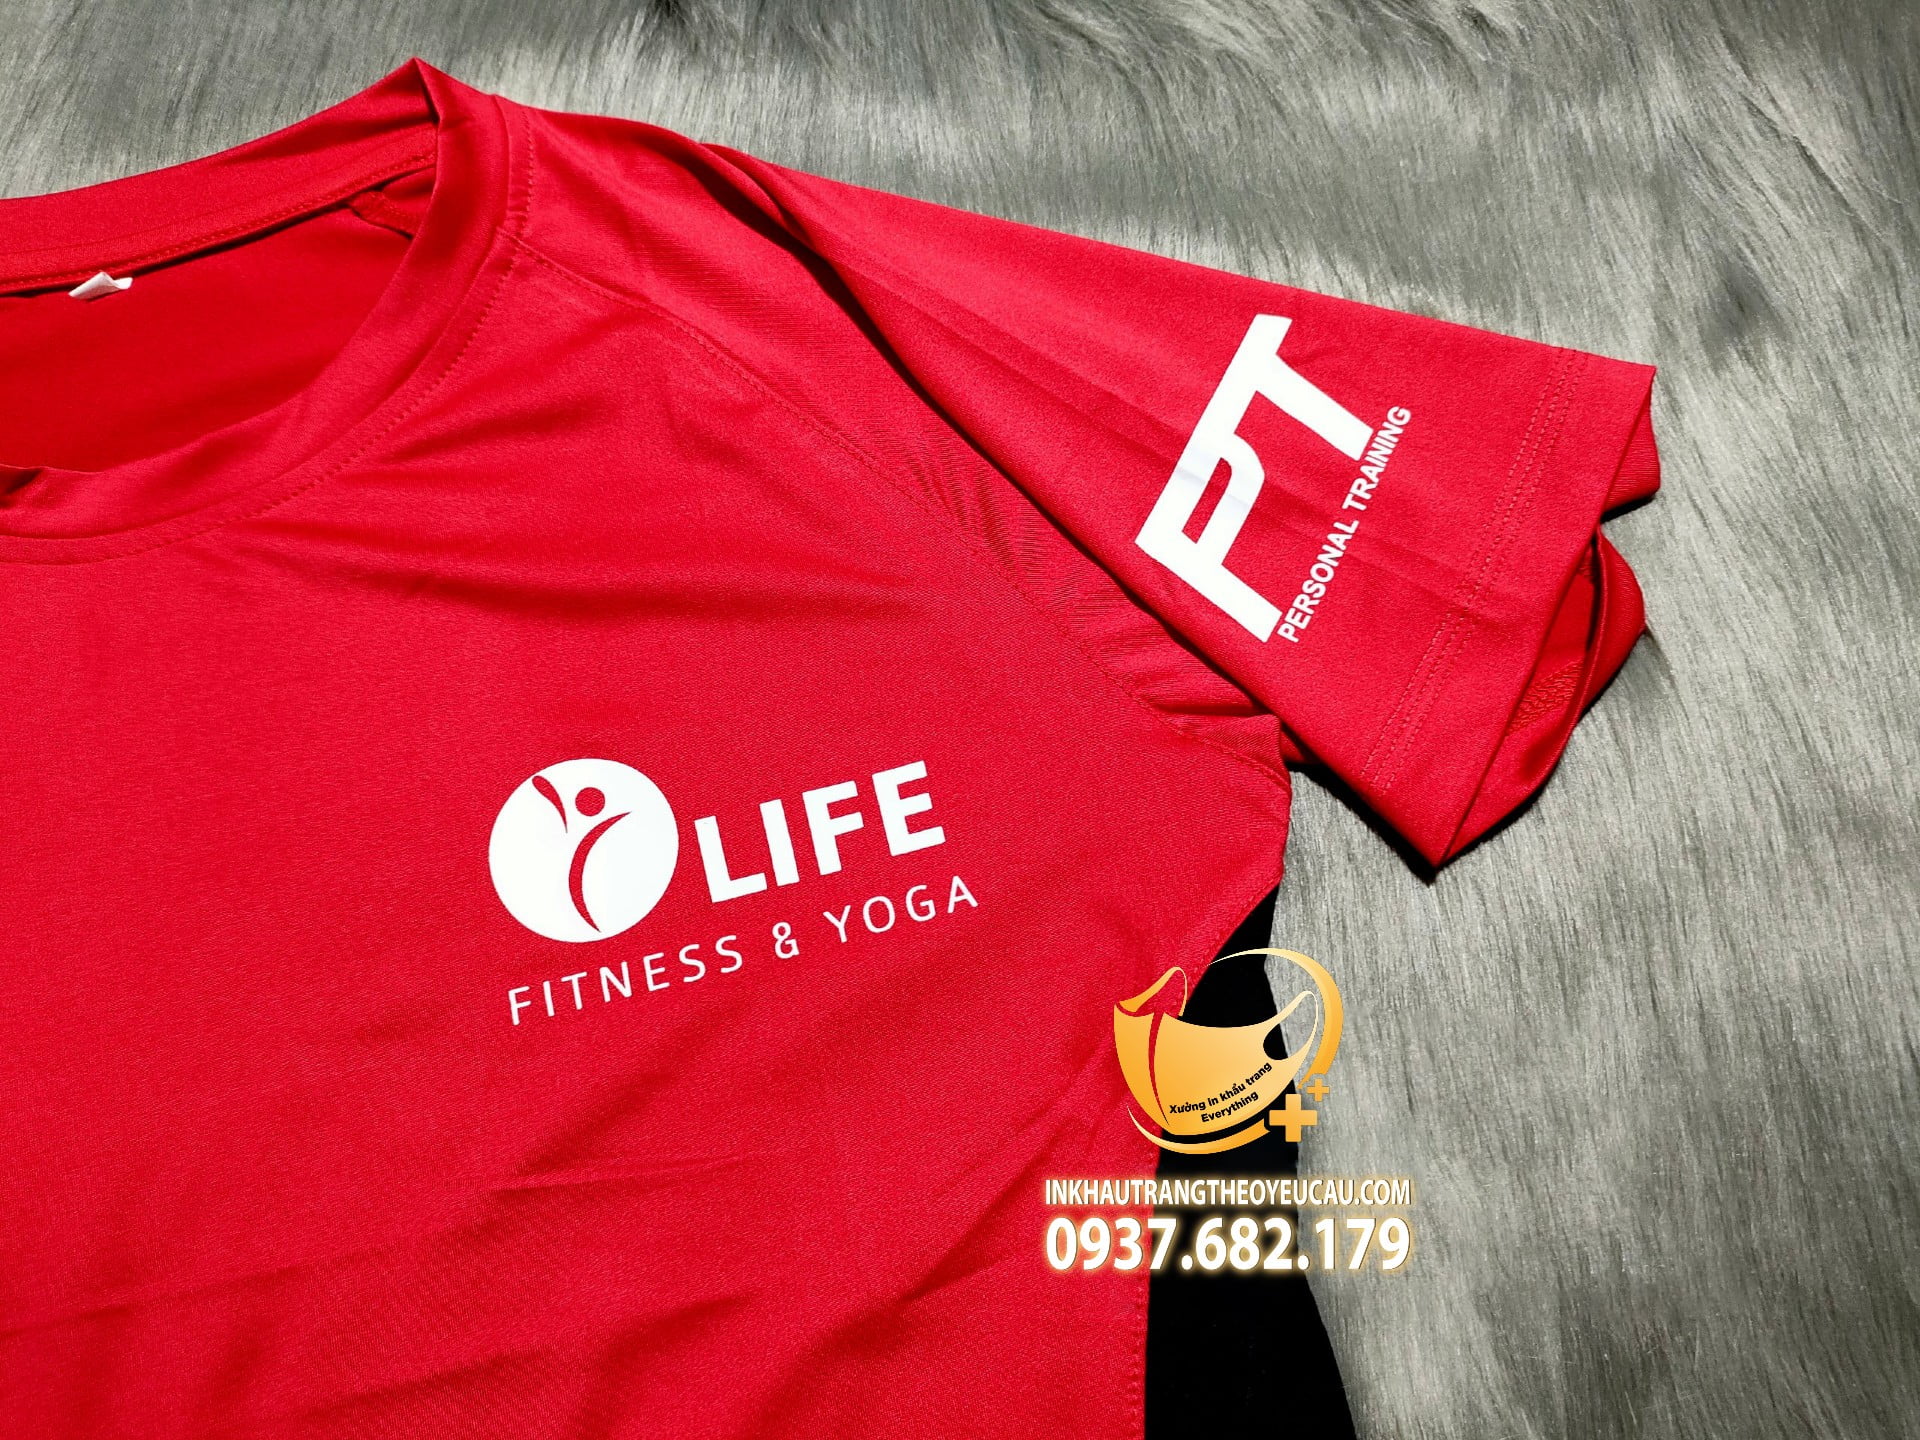 Logo trước ngực áo đồng phục pt Life fitness and yoga